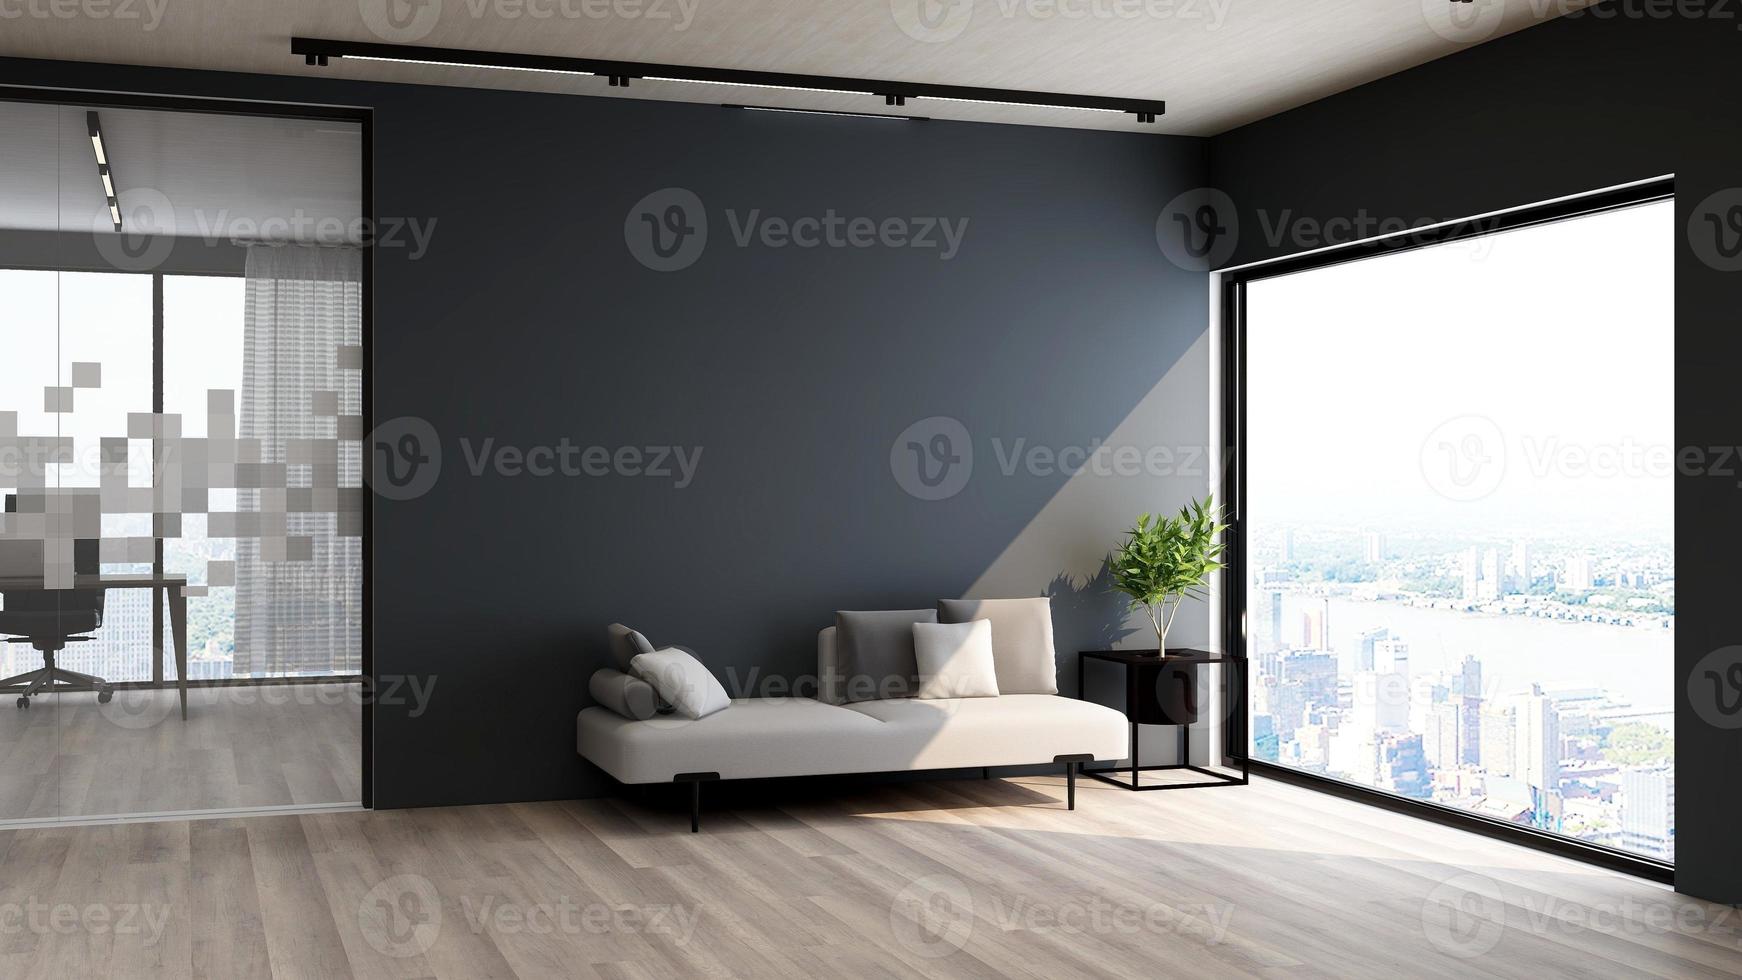 3d renderização de design de maquete de parede de salão de hóspedes com conceito moderno de design de interiores minimalista foto